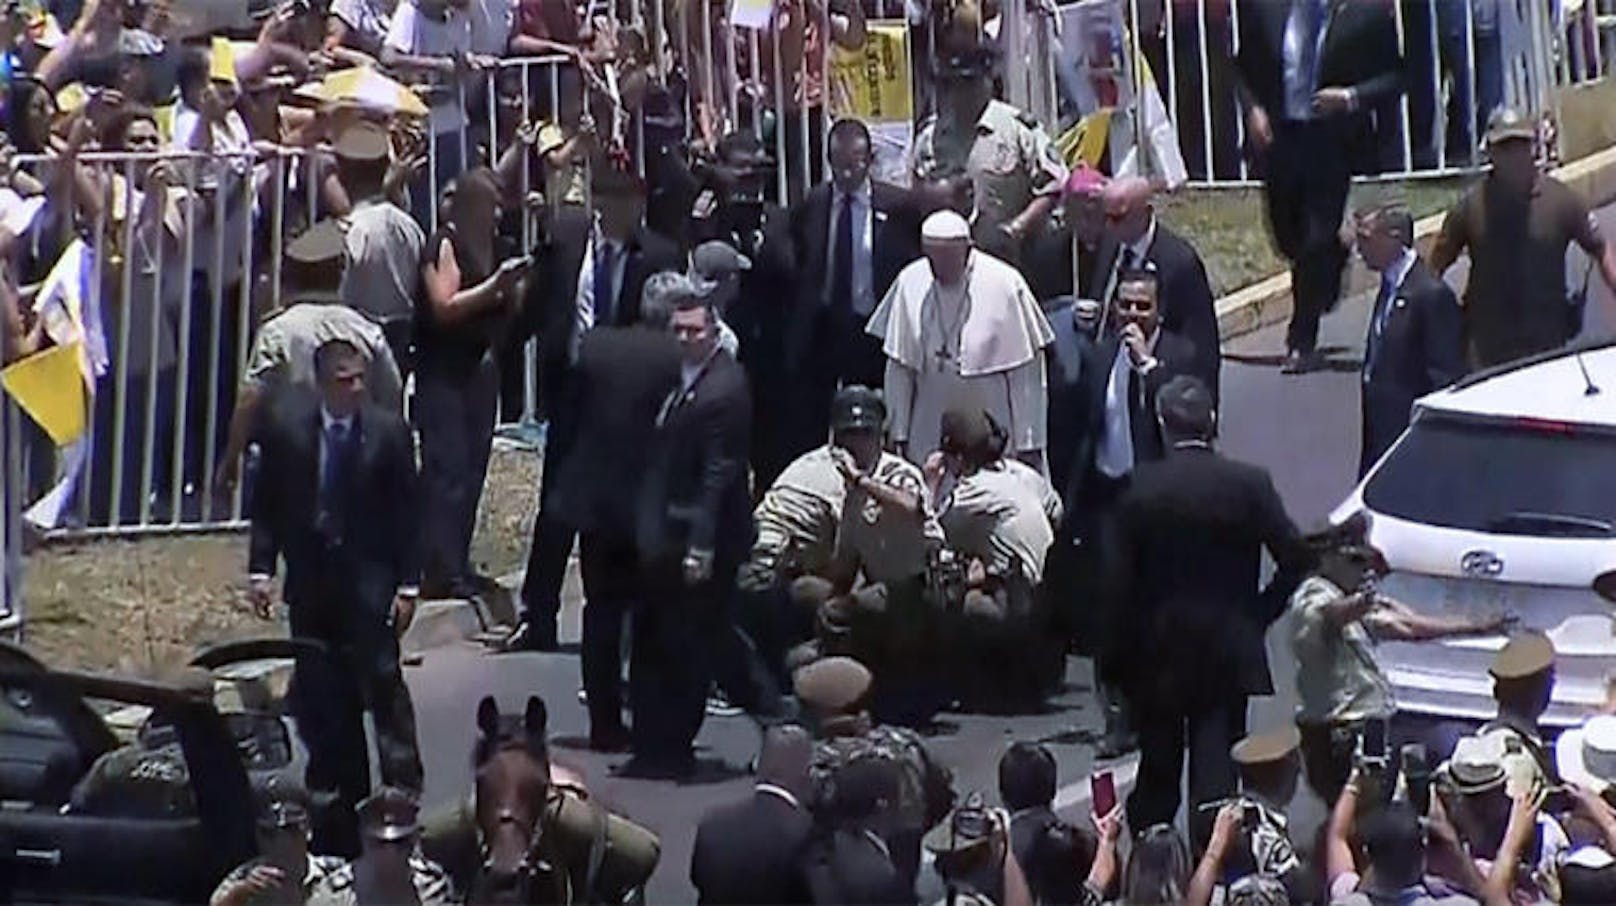 Der Papst ließ daraufhin die ganze Prozession anhalten, um der Polizistin beizustehen. Alle Beteiligten kamen mit dem Schrecken davon.